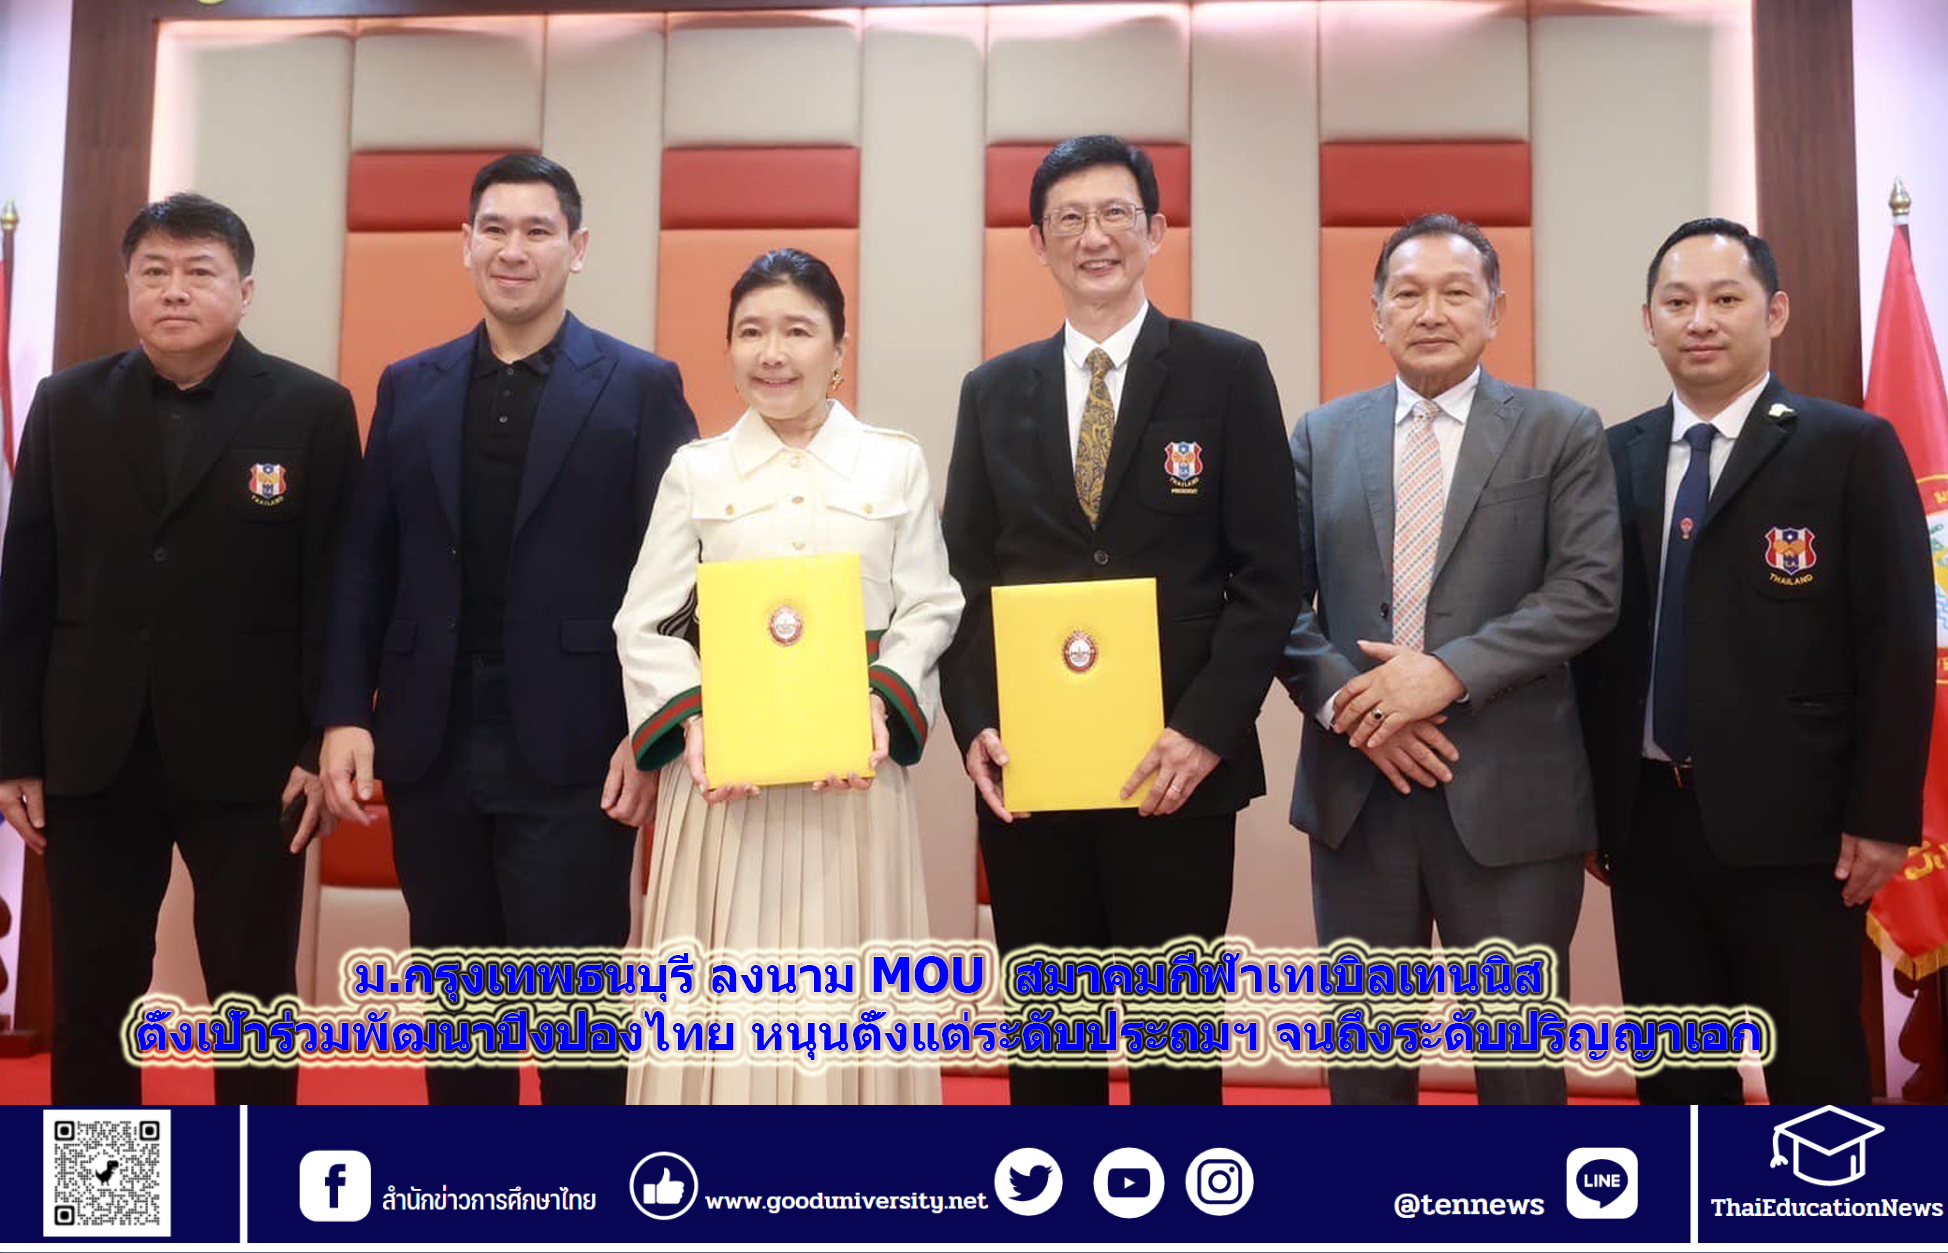 ม.กรุงเทพธนบุรี ลงนาม MOU สมาคมกีฬาเทเบิลเทนนิส ตั้งเป้าร่วมพัฒนาปิงปองไทย หนุนตั้งแต่ระดับประถมฯ จนถึงระดับปริญญาเอก